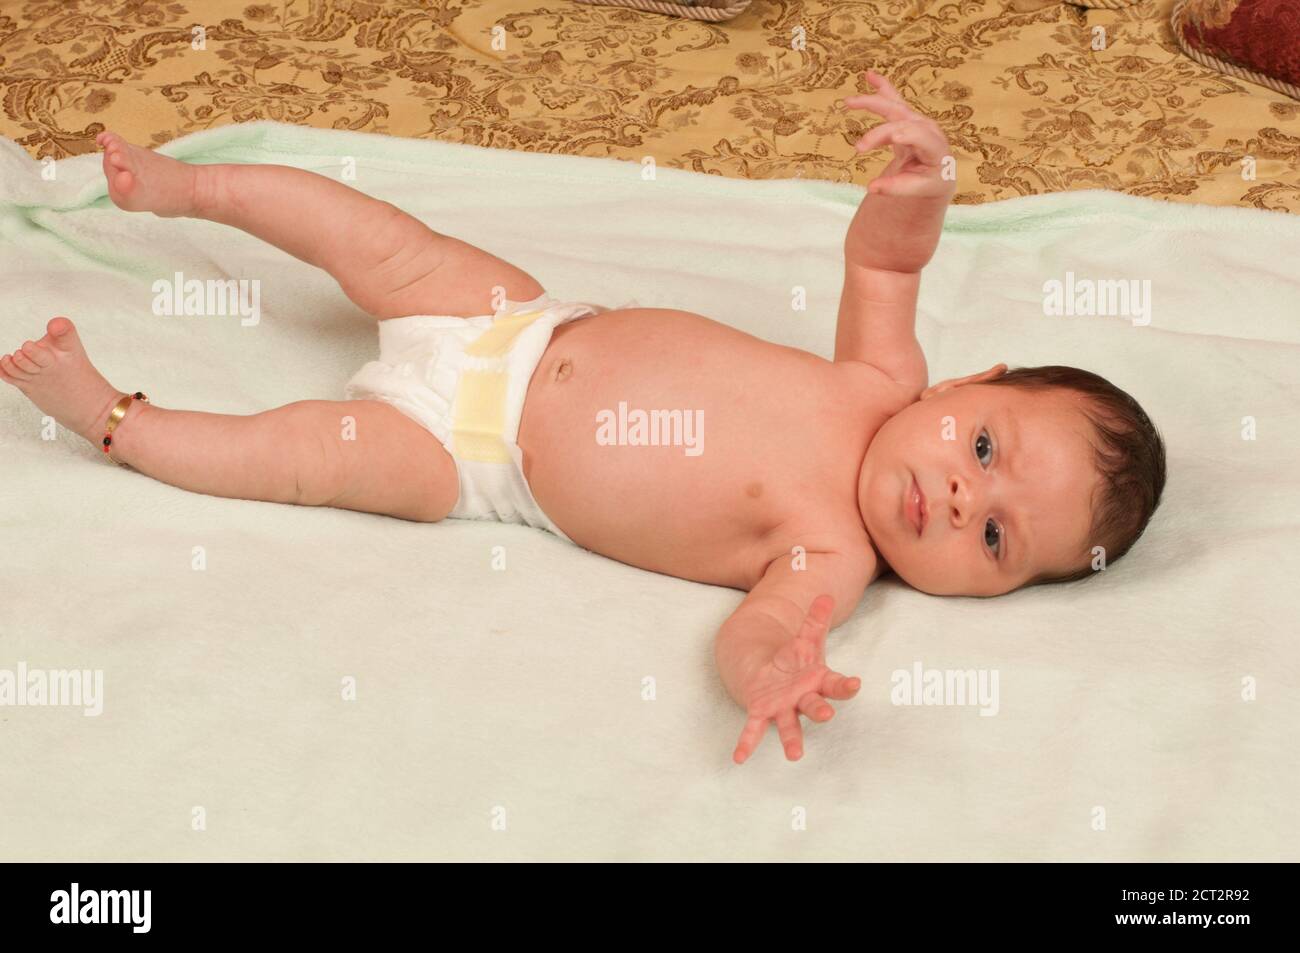 Bébé fille de 1 mois nouveau-né sur le dos dans la couche, le réflexe Startle (Moro réflexe), l'anklet pour la bonne fortune Banque D'Images